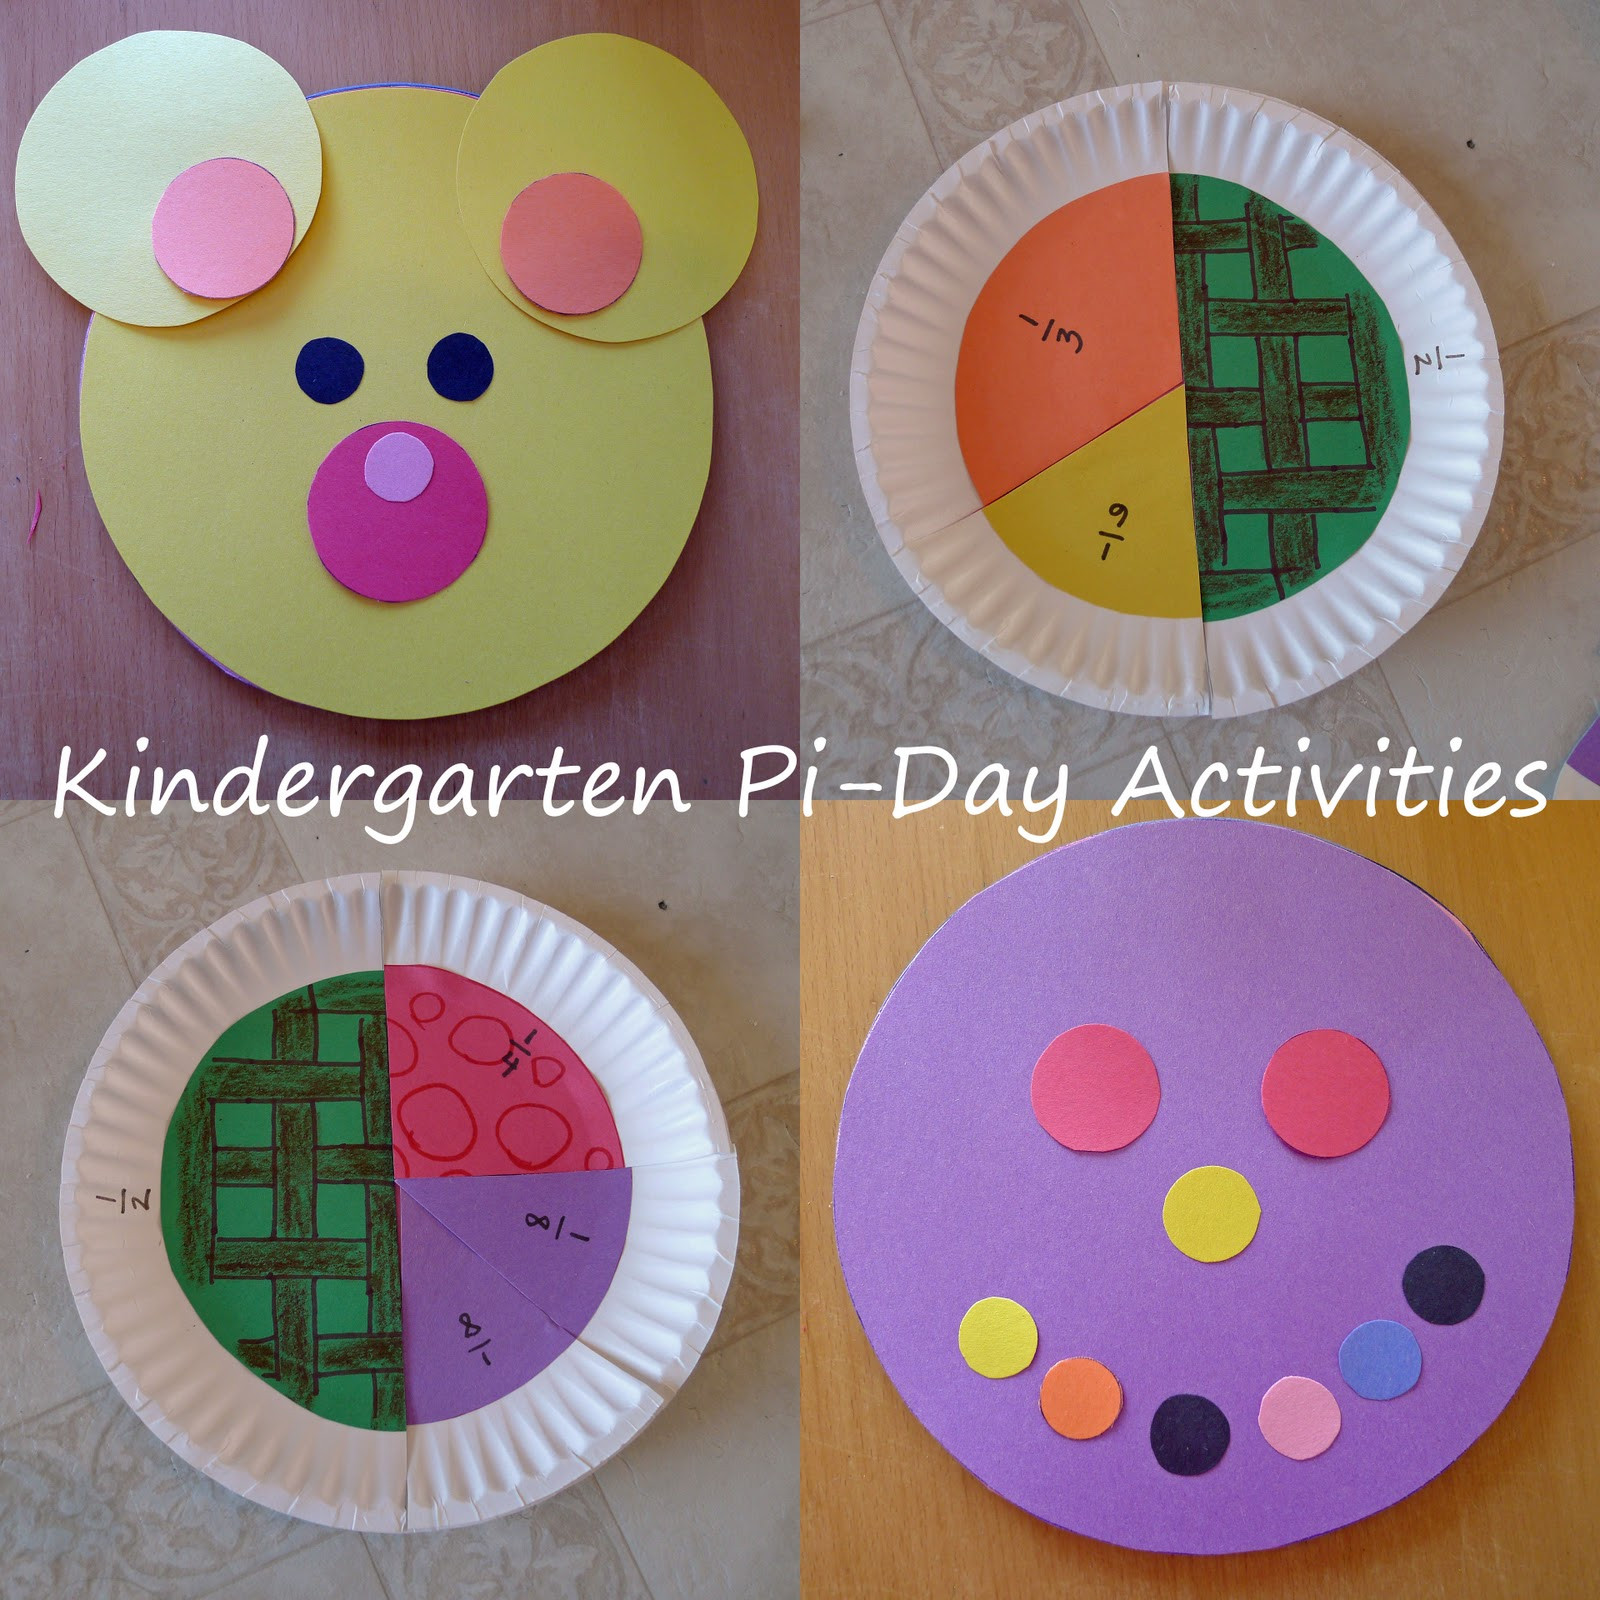 Pi Day Activities For Kindergarten
 Kindergarten Pi Day ActivitiesReacher Reviews